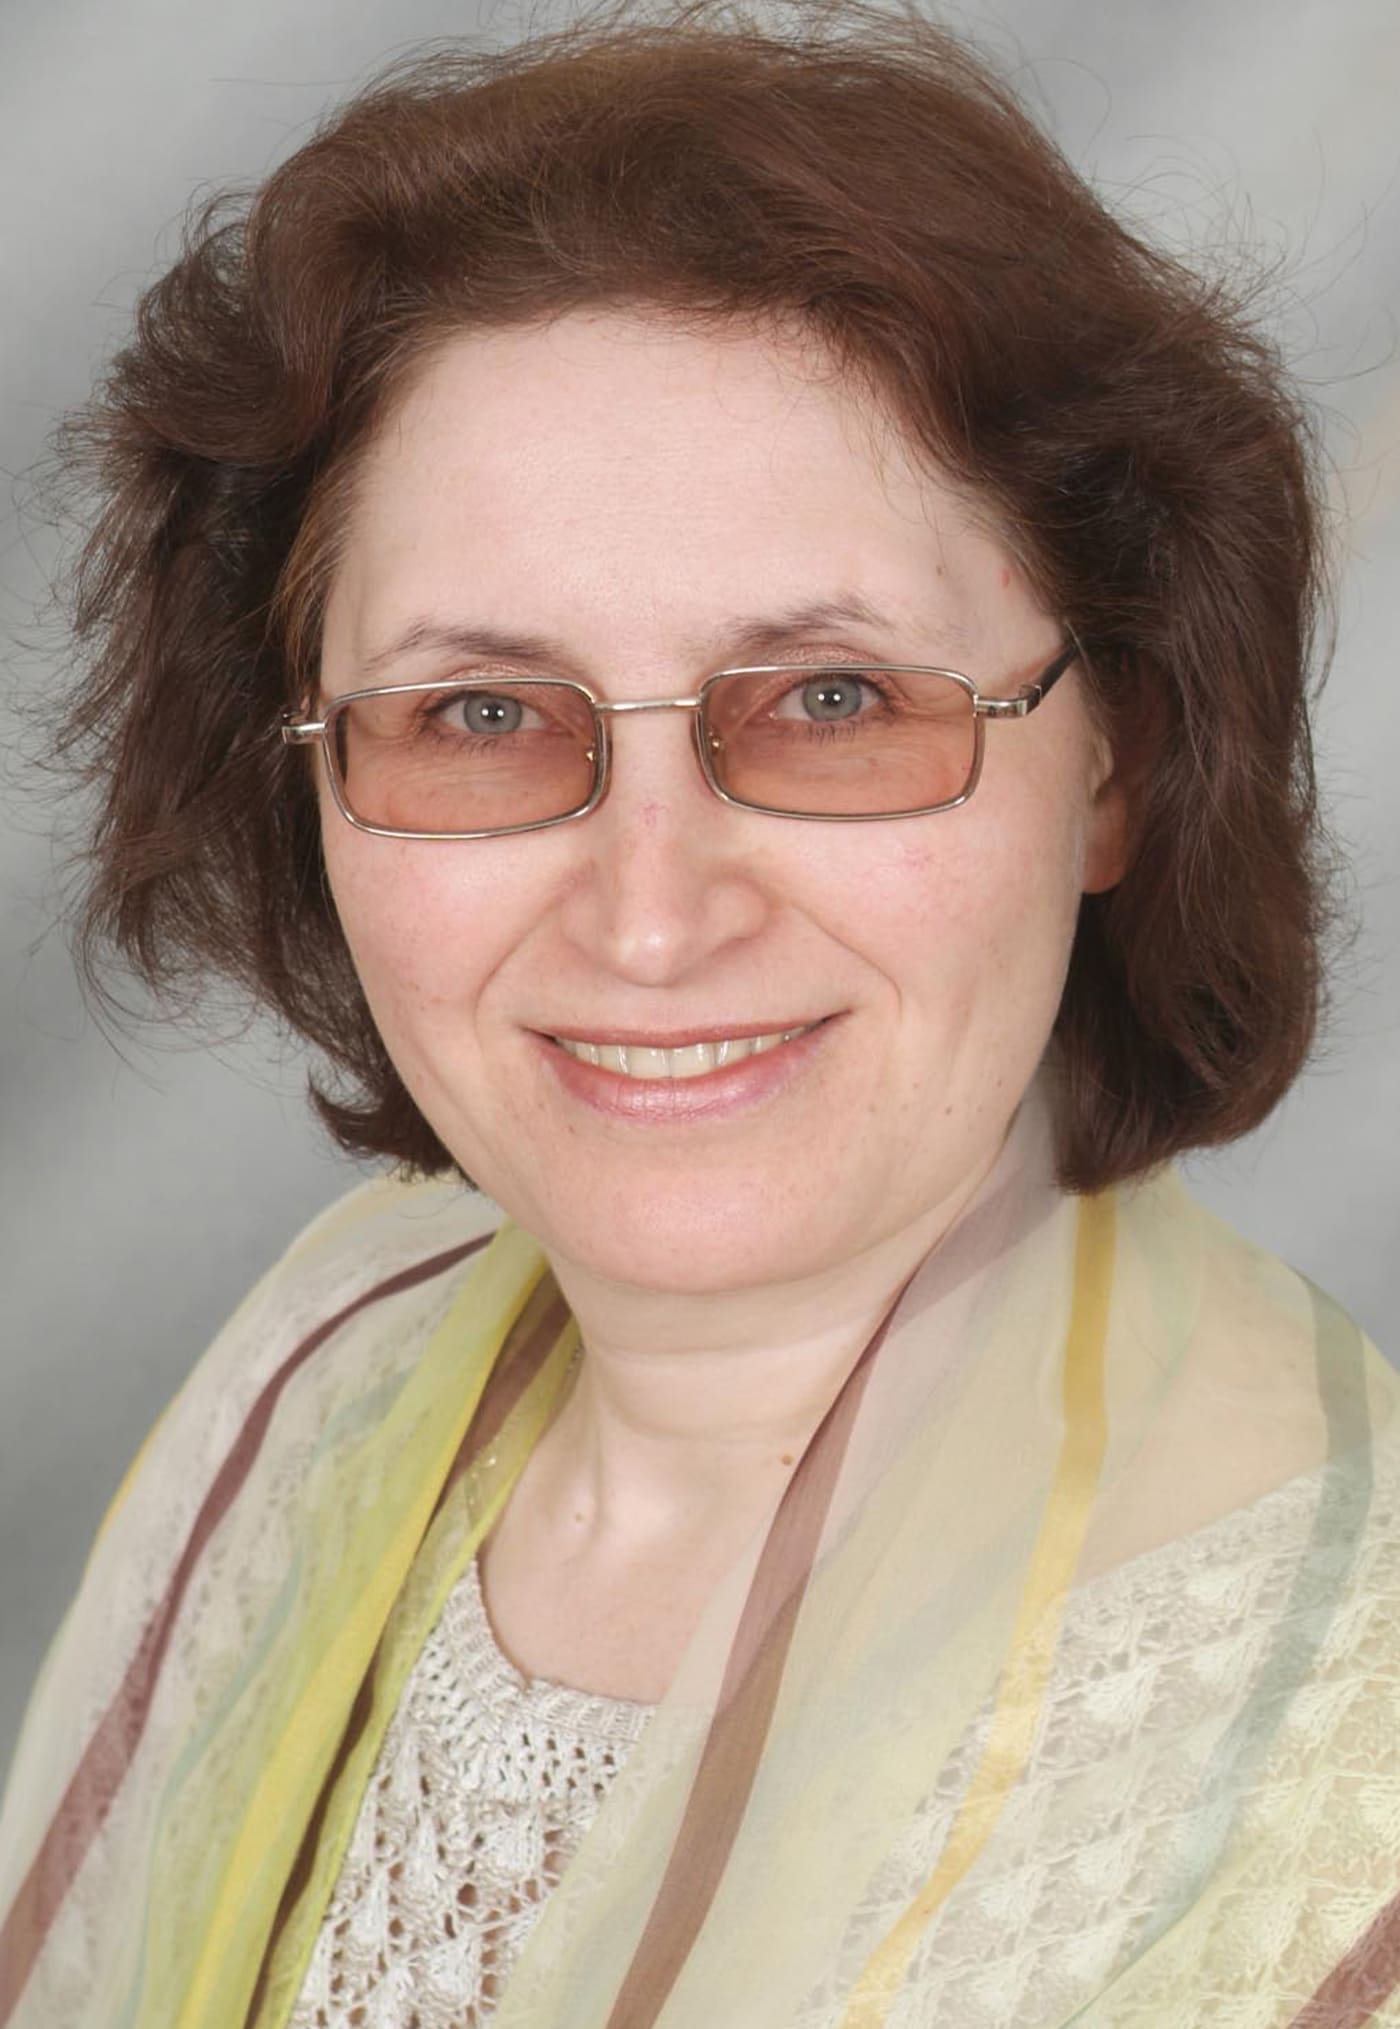 Карасева Светлана Юрьевна- учитель химии, экологии